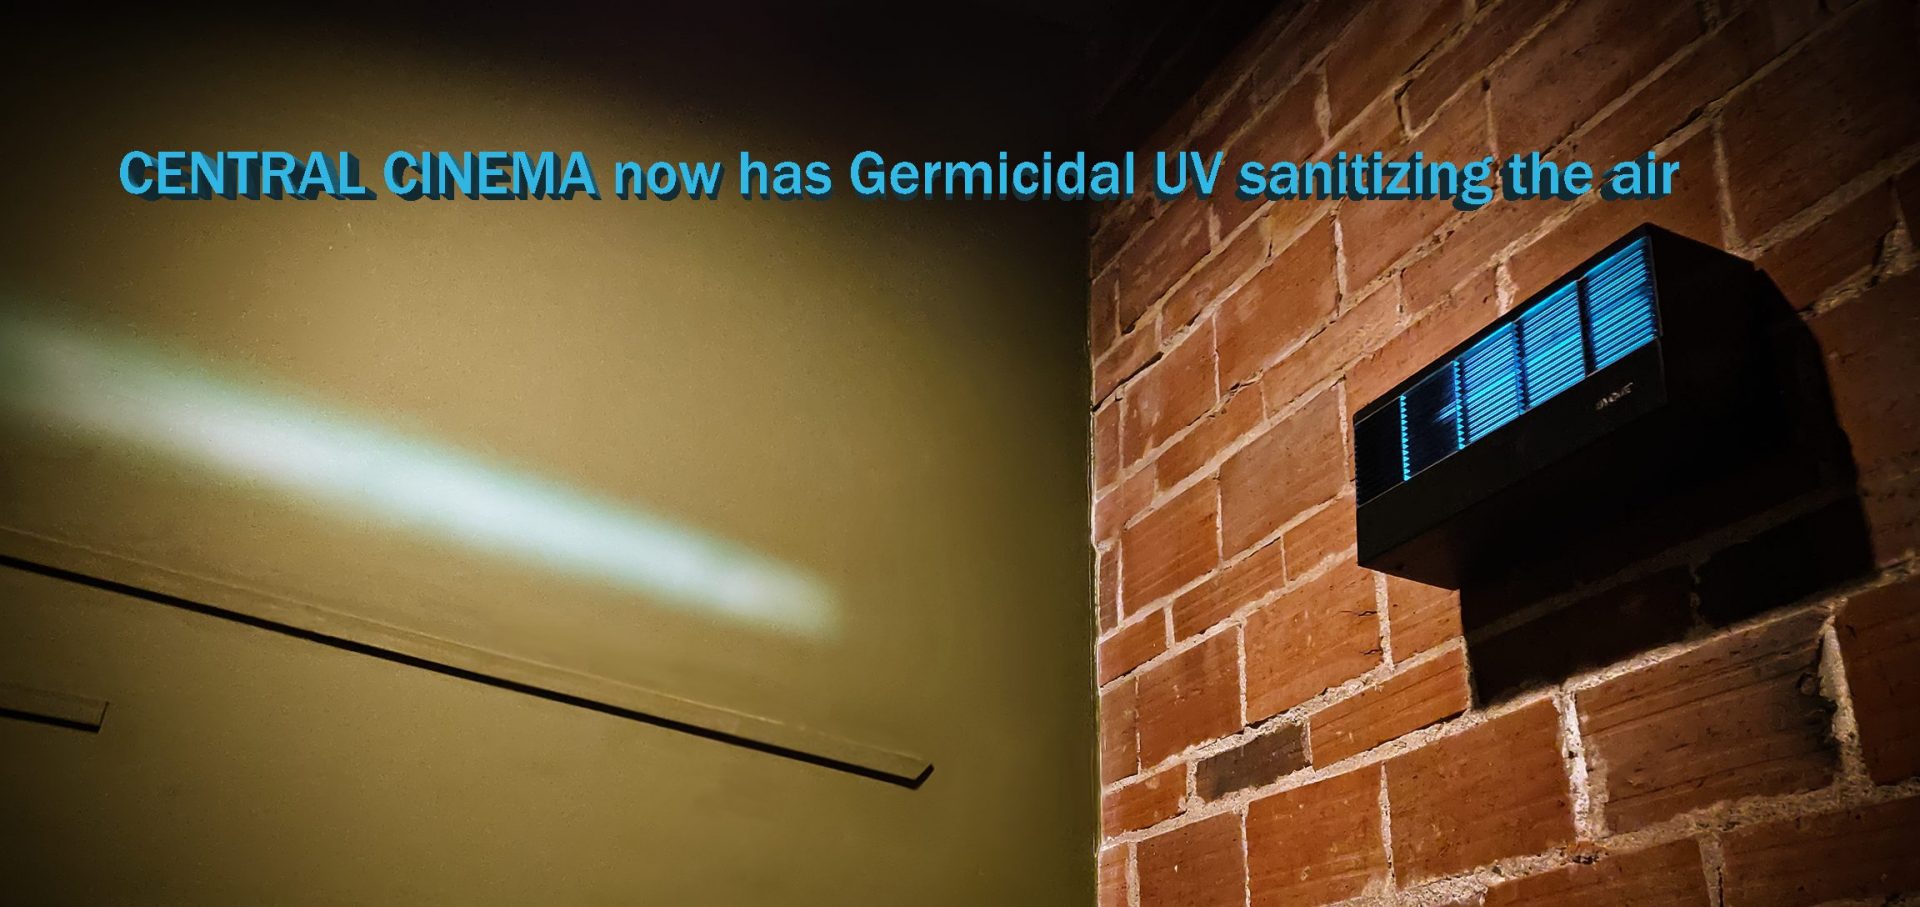 Germicidal UV kills viruses floating in the air